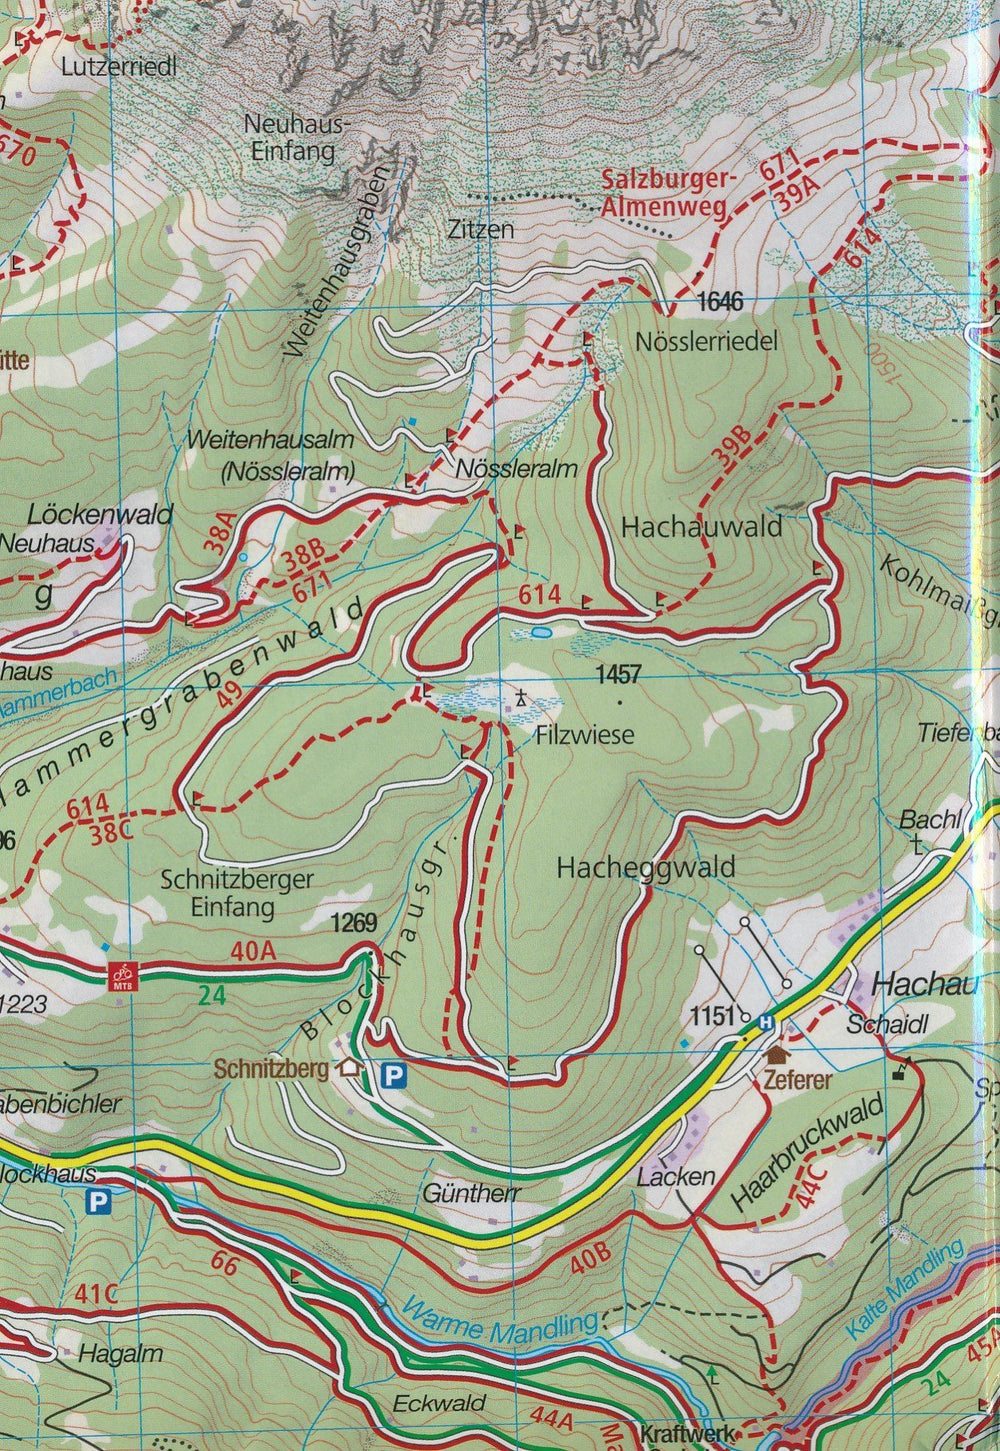 Carte de randonnée n° 208 - Wienerwald (Autriche) | Kompass carte pliée Kompass 